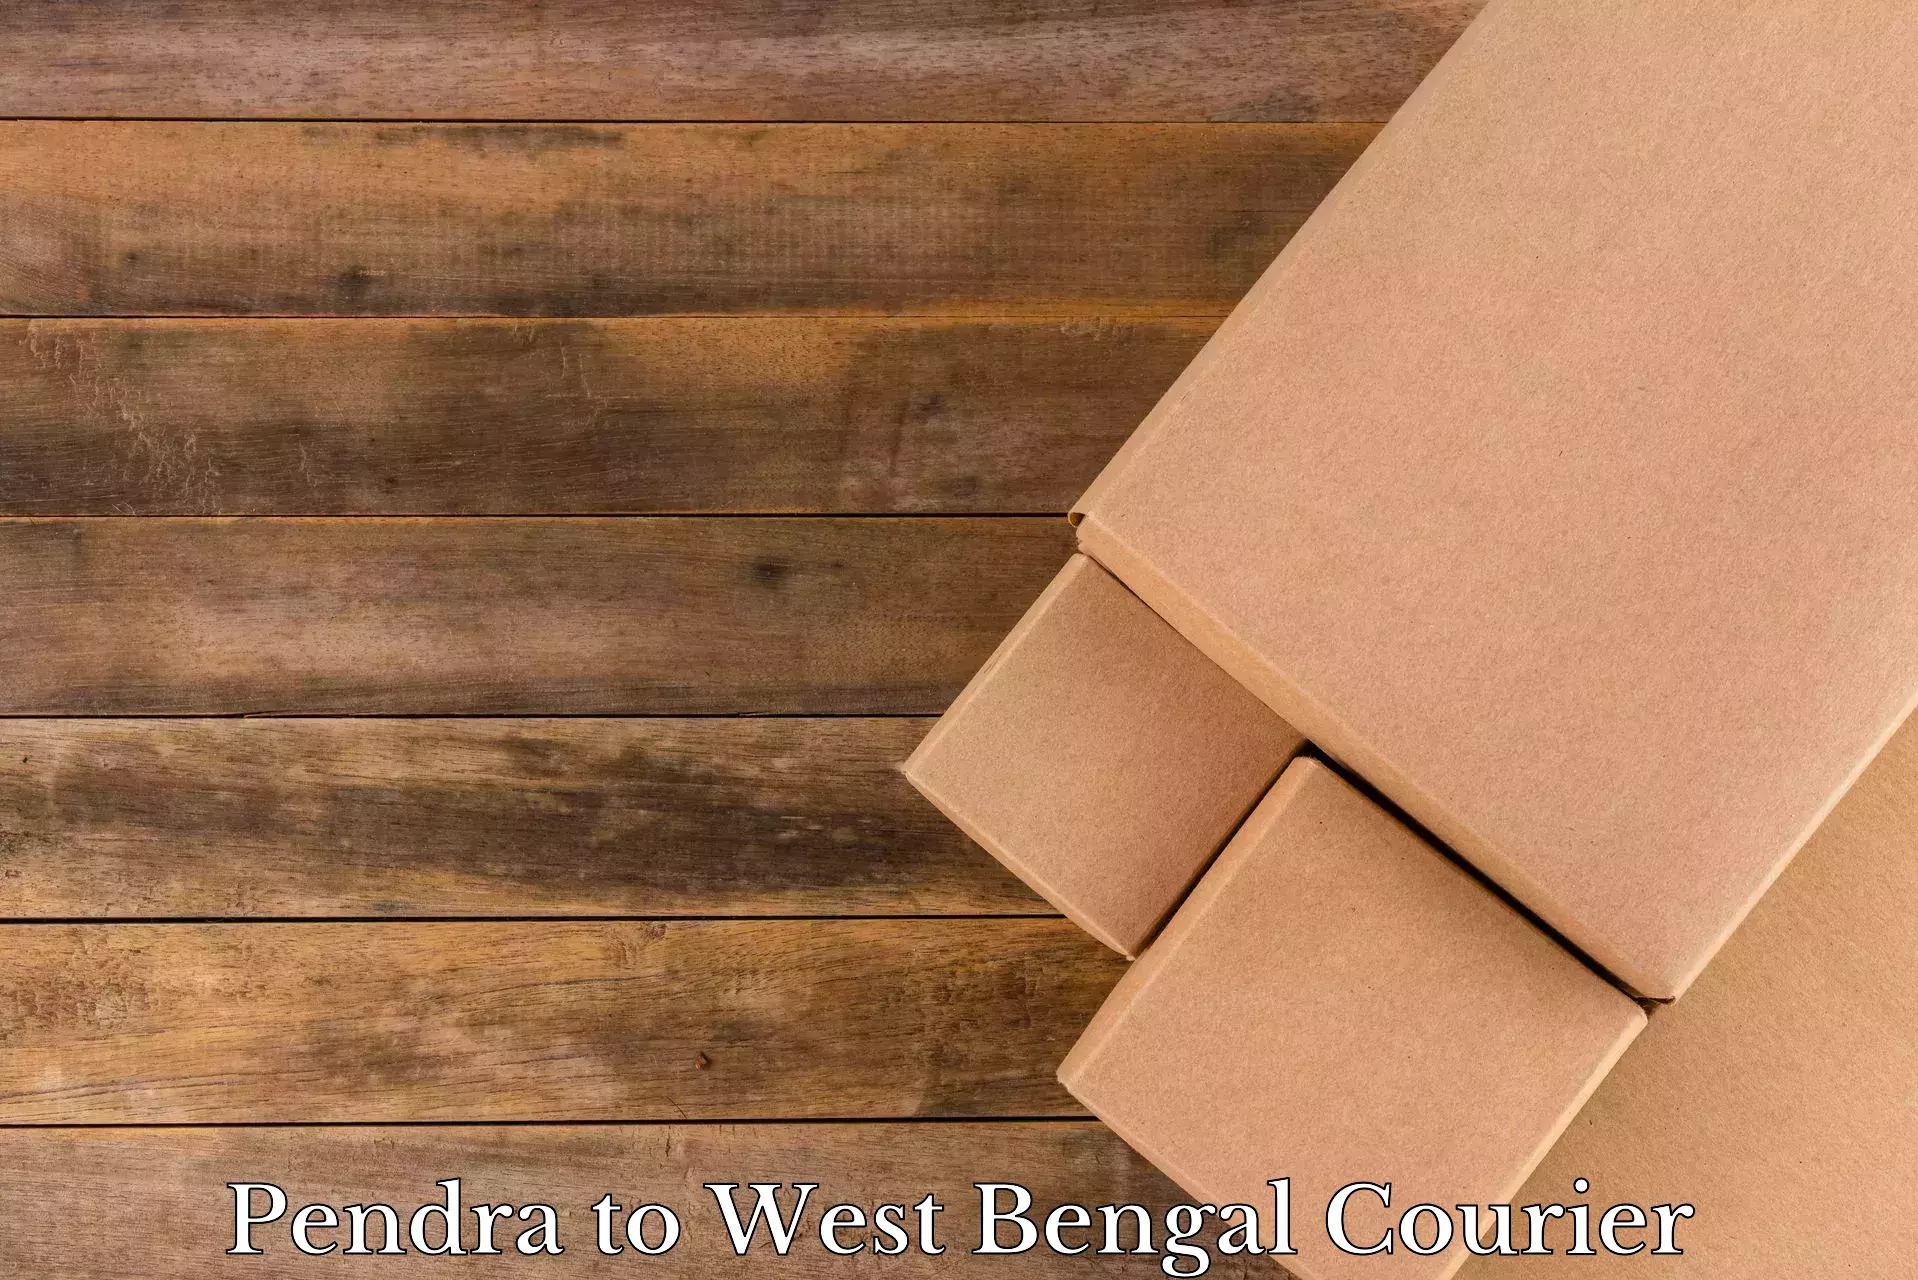 Furniture transport specialists Pendra to Kolkata Port